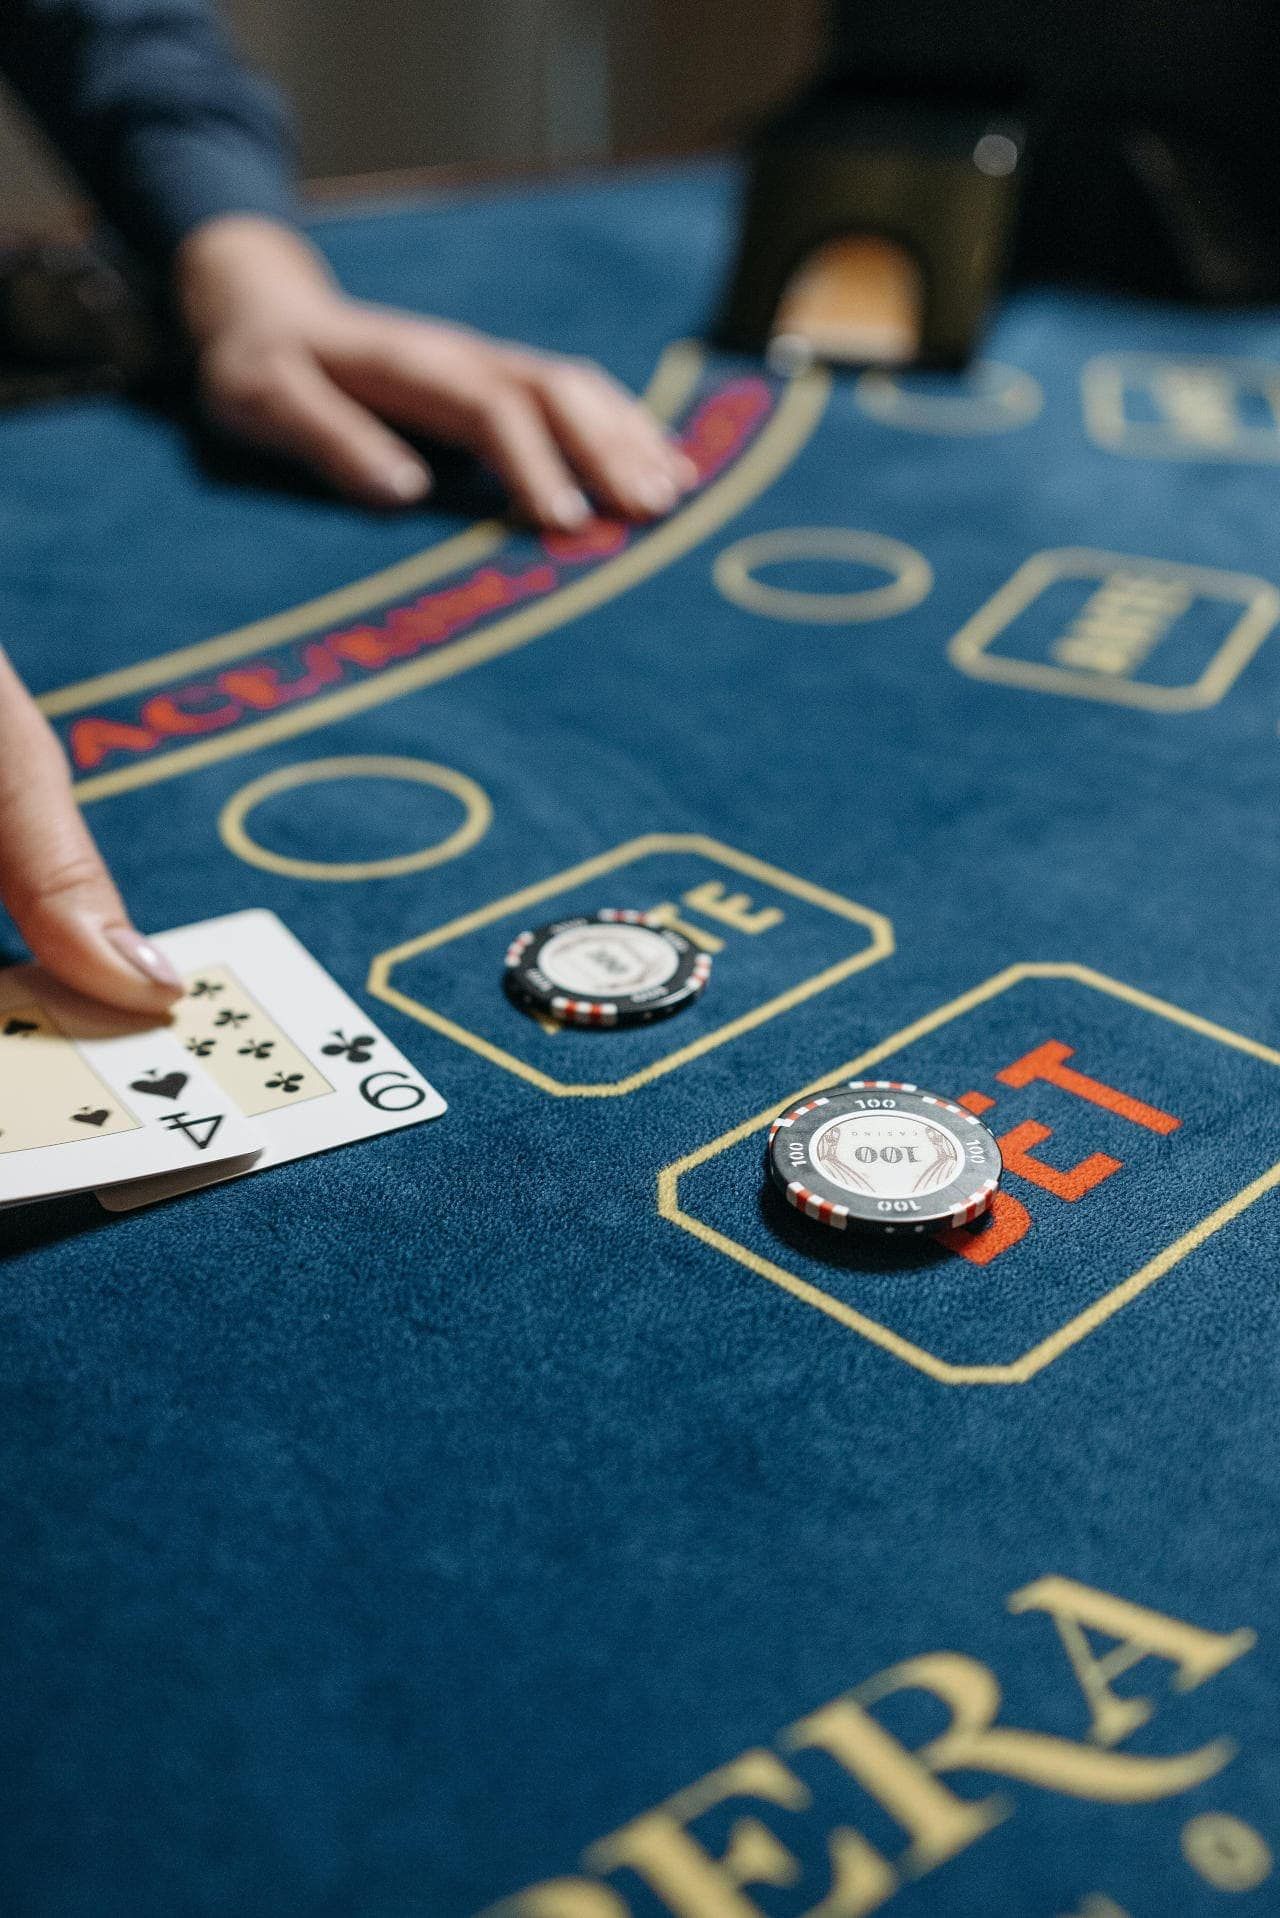 Tips Preparing For Professional Gambling Career 2 4